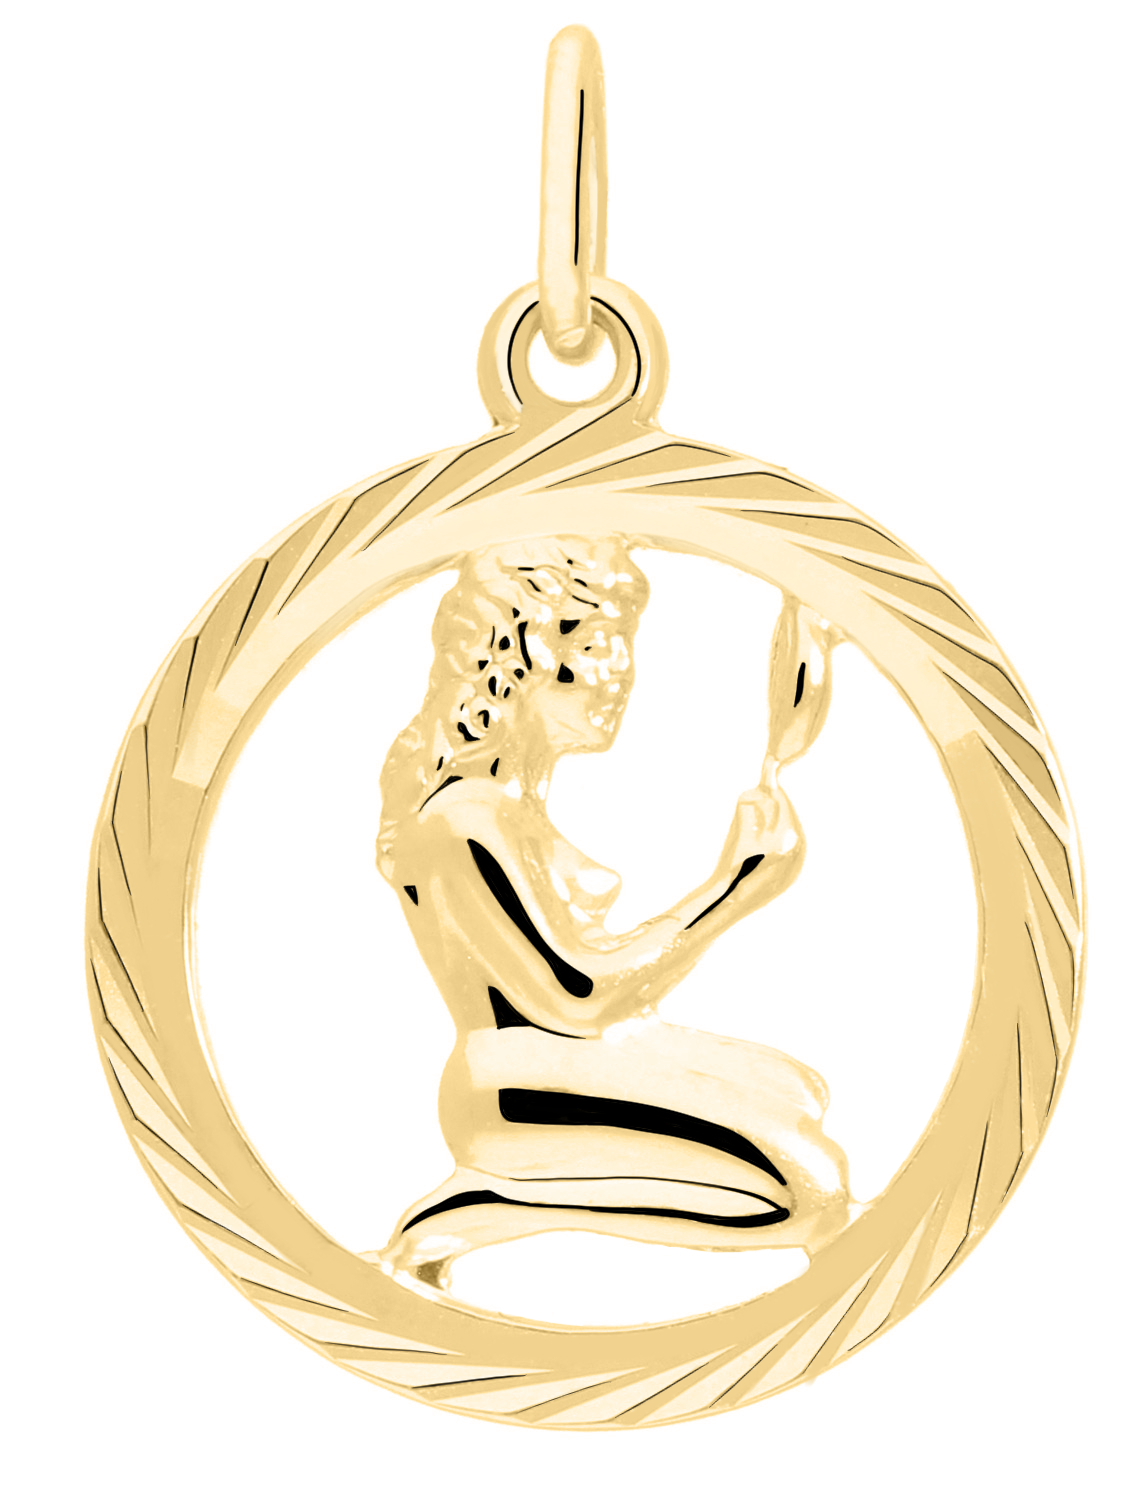 Unisexanhänger aus echtem Gelbgold Sternezeichen Jungfrau - Gavno | Produktansicht